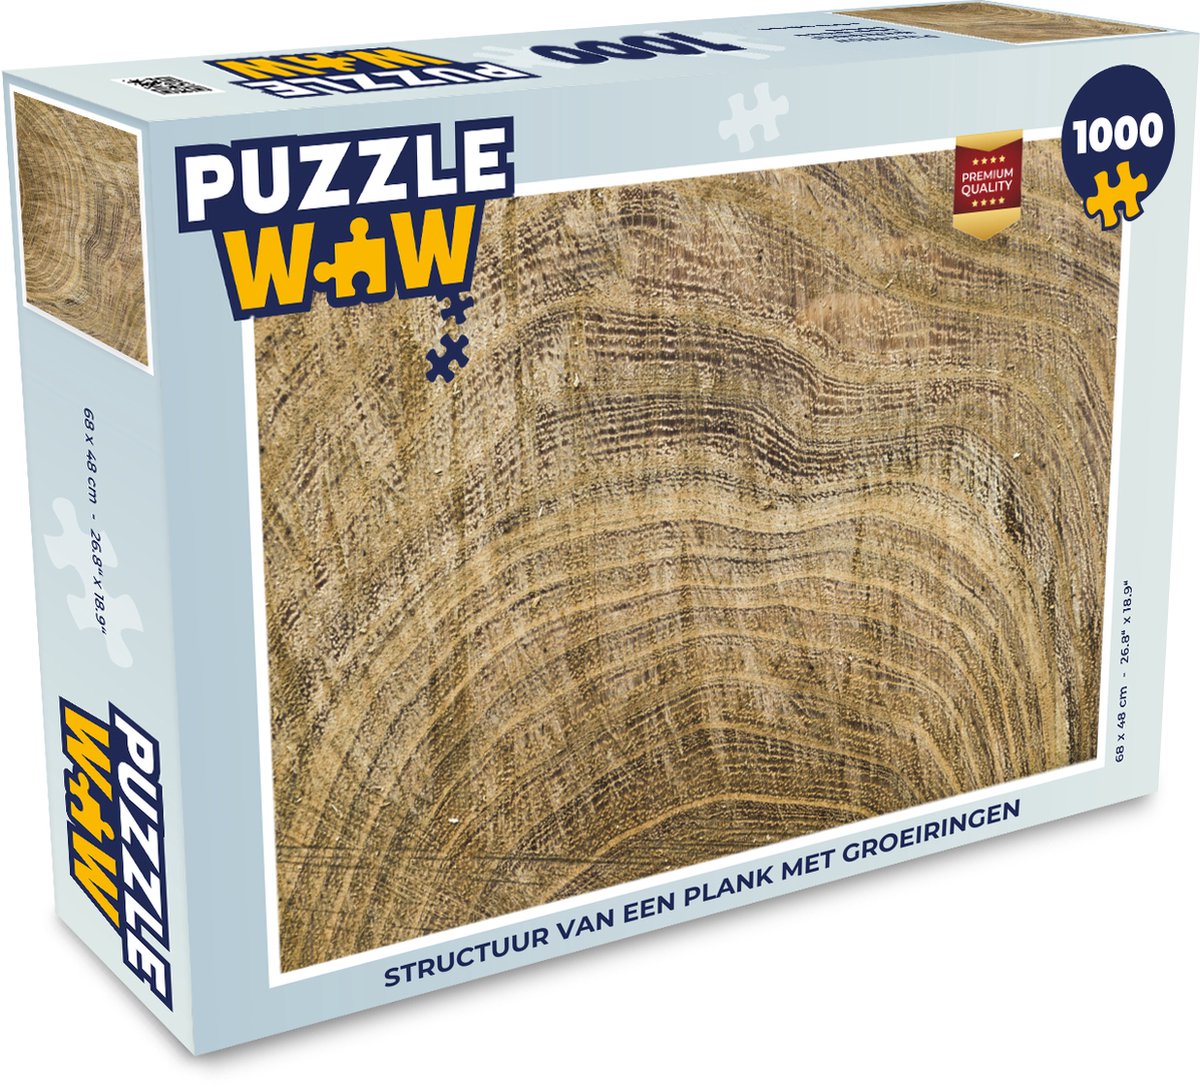 Puzzel Structuur van een plank met groeiringen - Legpuzzel - Puzzel 1000  stukjes... | bol.com